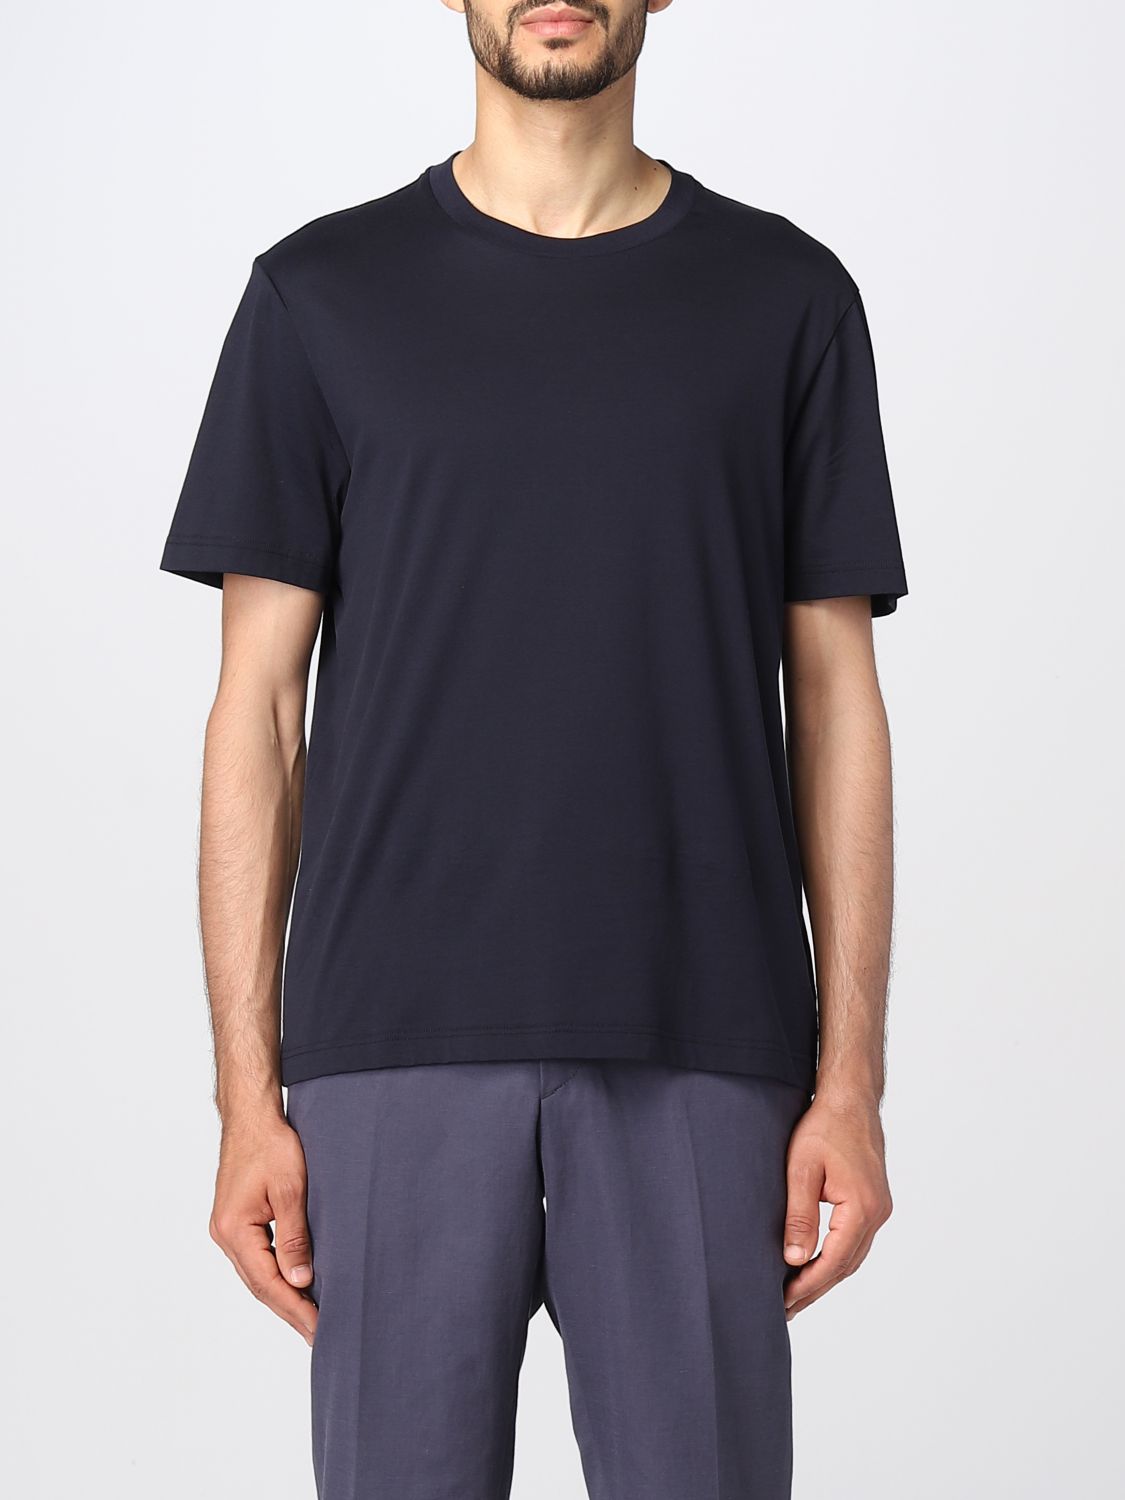 BRIONI: t-shirt for man - Blue | Brioni t-shirt UJLA0L P1613 online on ...